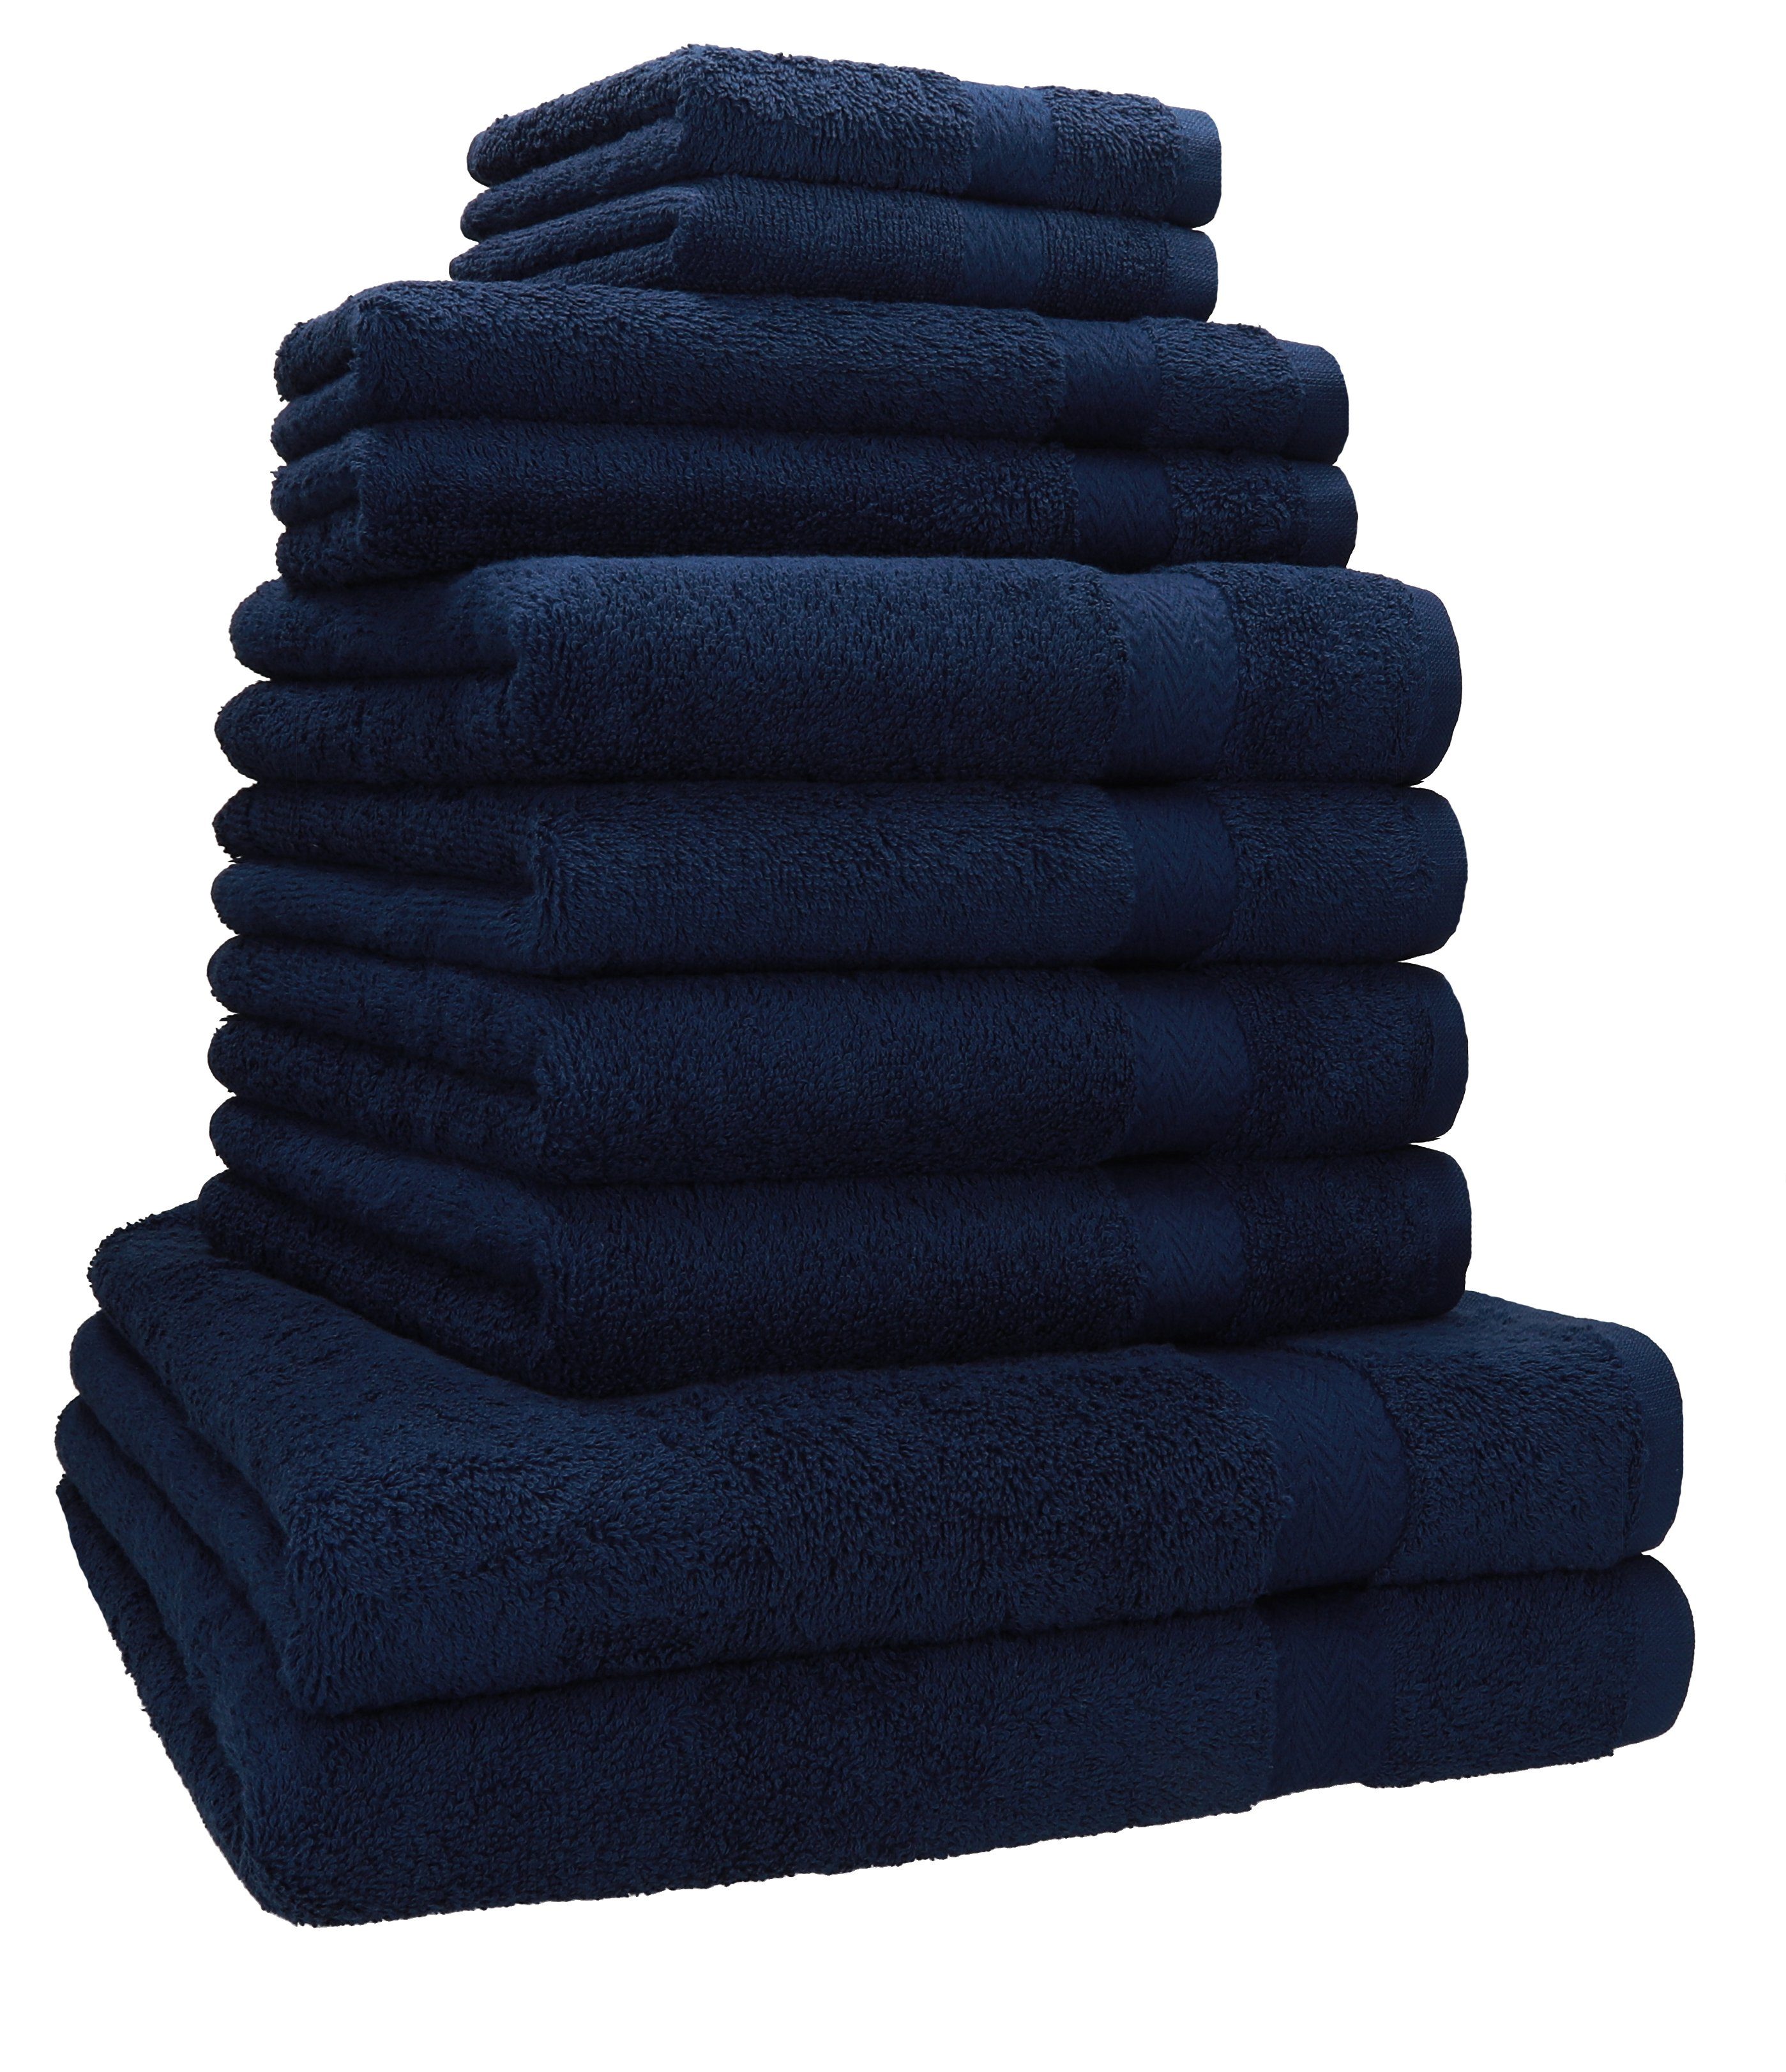 Betz Handtuch Set 10-TLG. Handtuch-Set Classic 100% Baumwolle 2 Duschtücher 4 Handtücher 2 Gästetücher 2 Seiftücher, 100% Baumwolle, (10-tlg) dunkelblau